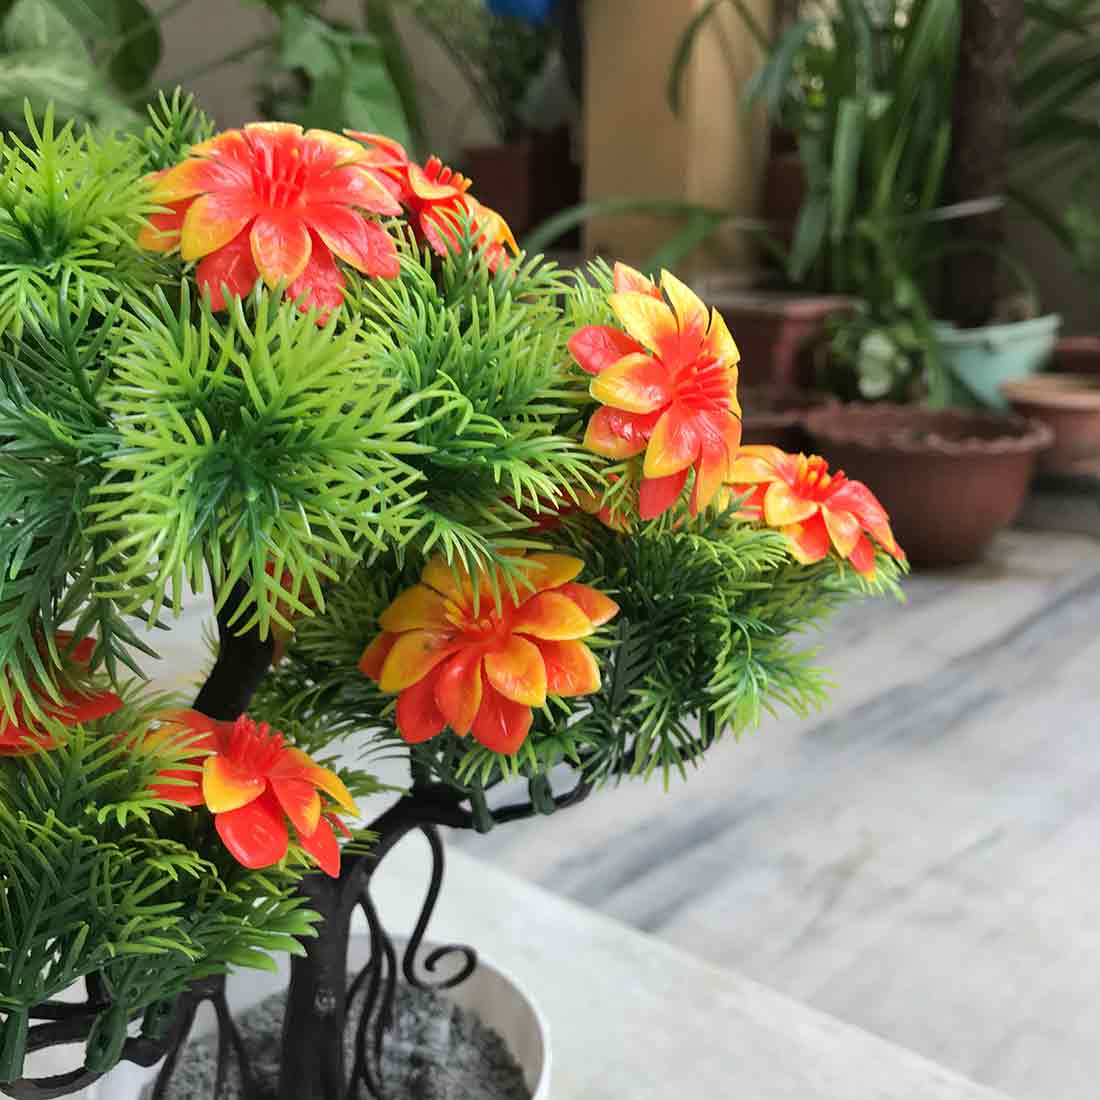 Artificial Flower Bouquet - Plastic Potted Plants - For Home Decoration - ApkaMart